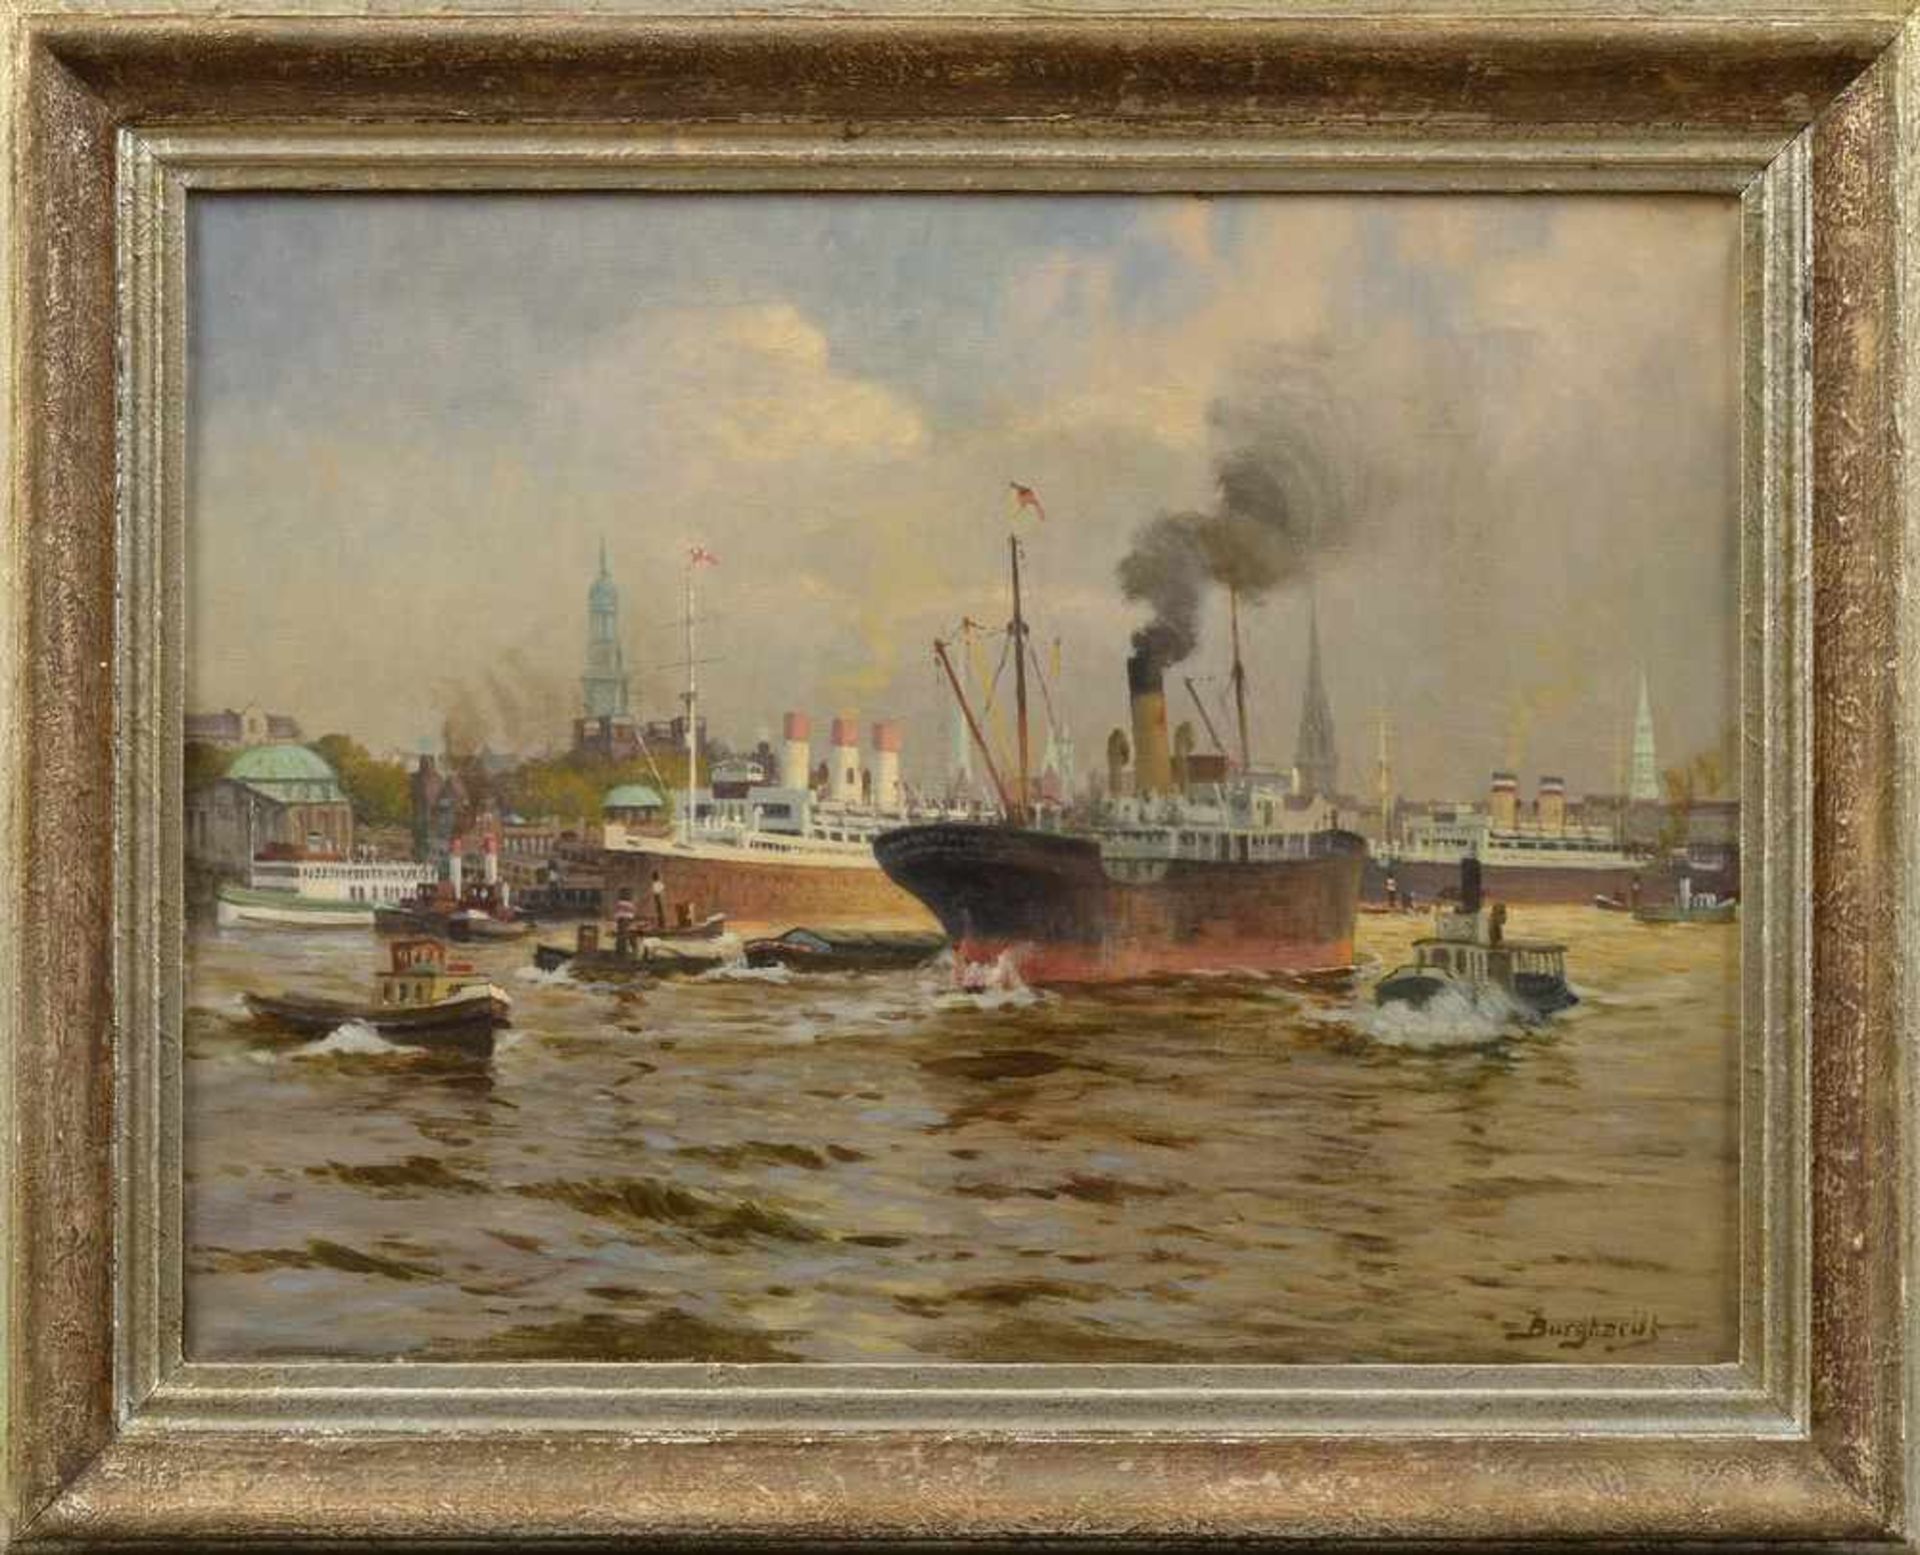 Burghardt, Gustav Paul (1875-1955) "Dampfer vor den Landungsbrücken", Öl/Leinwand, u.r.sign., - Bild 2 aus 4